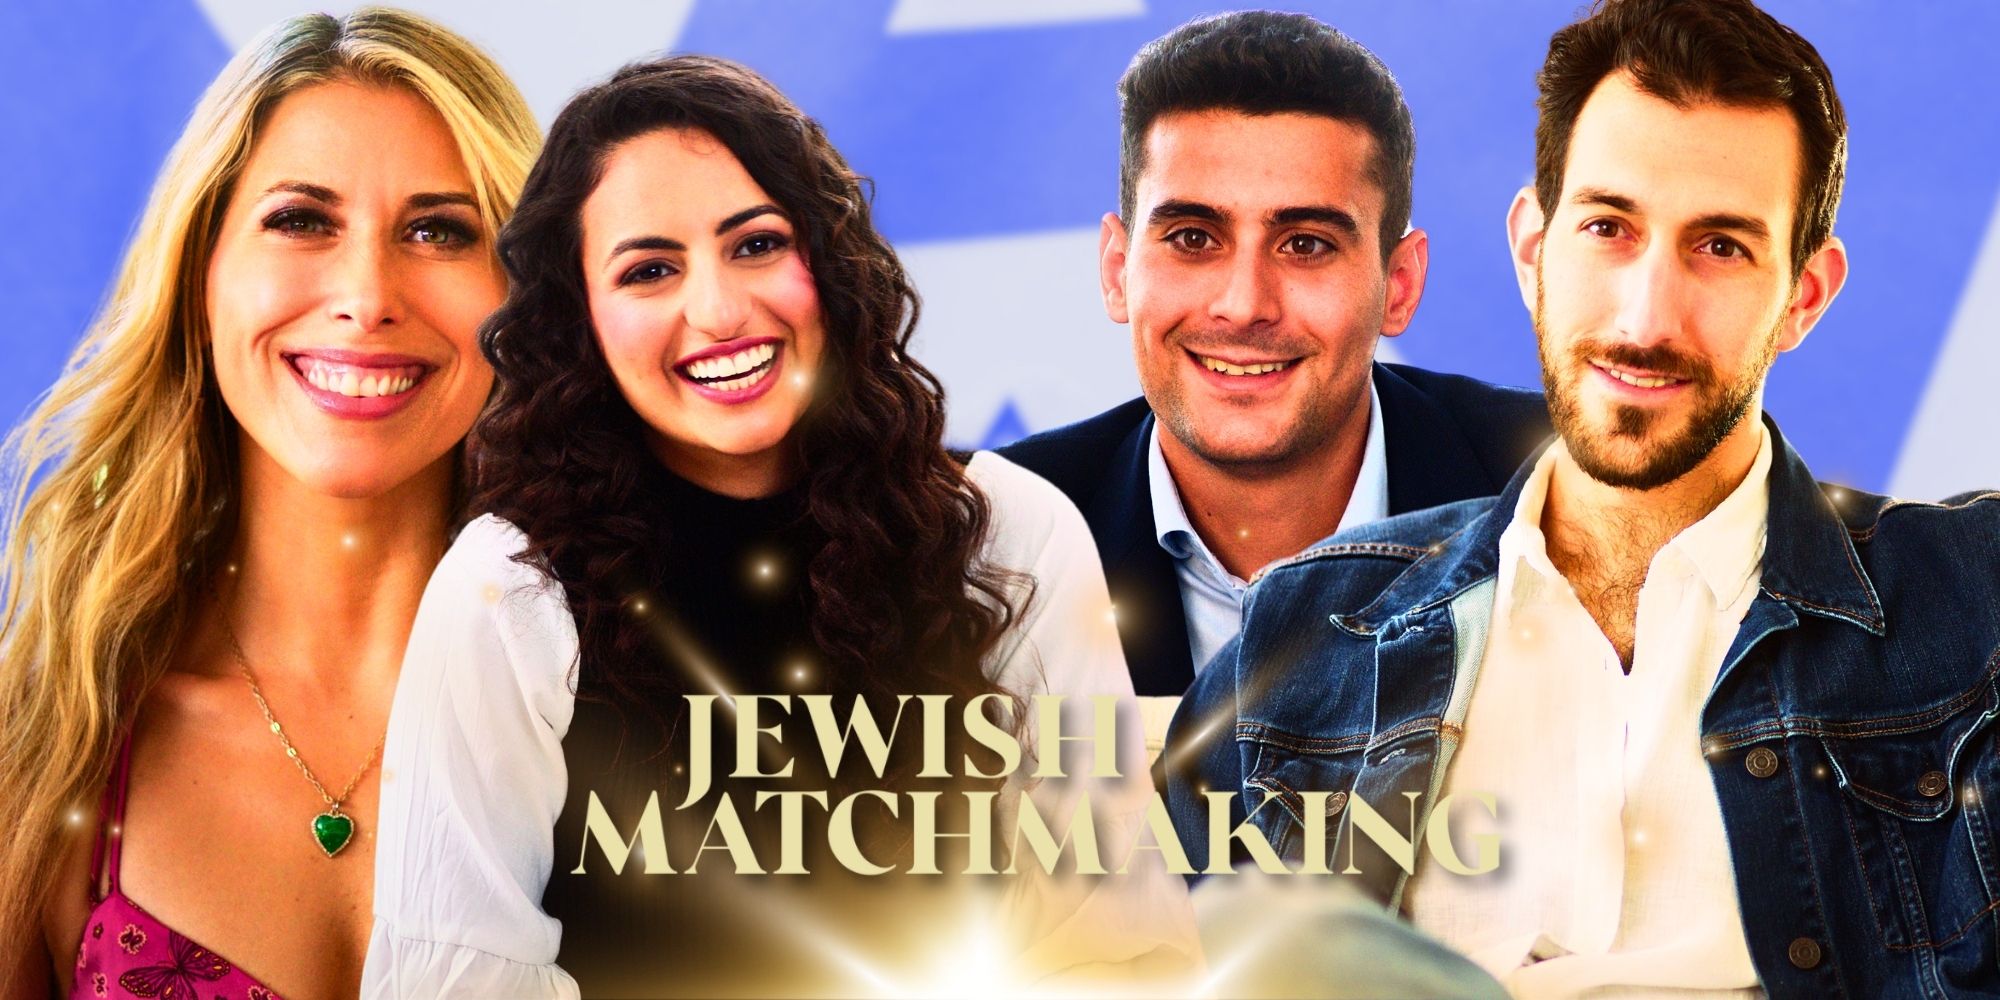 Jewish Matchmaking Season 1 cast